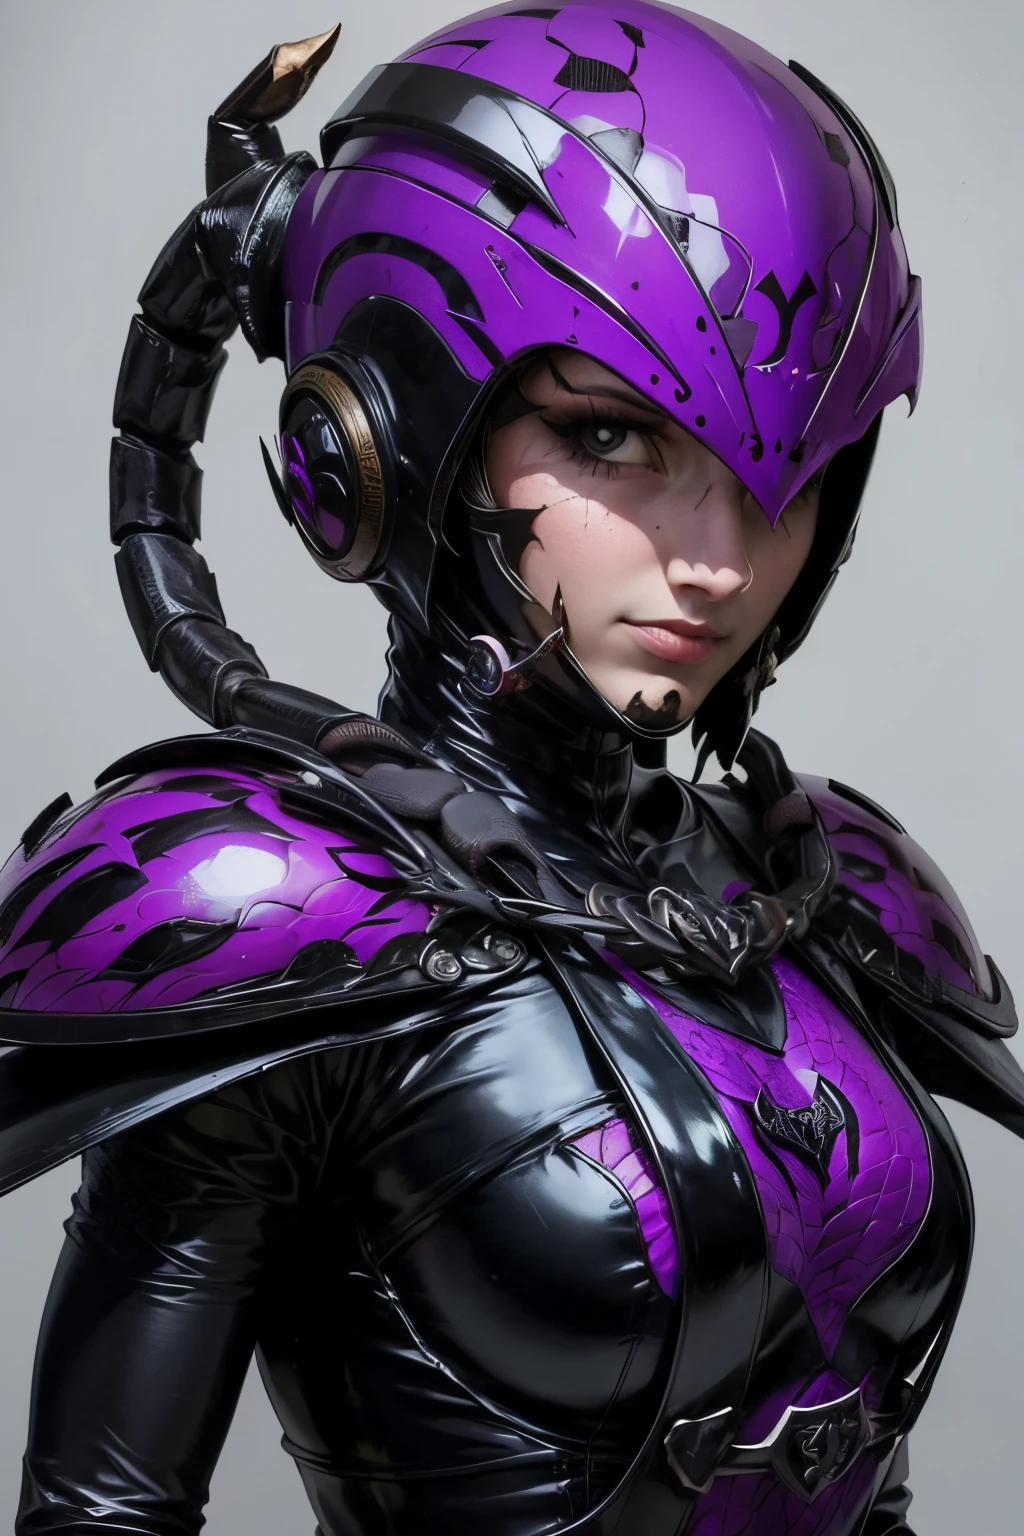 带有蝎子图案的头盔. 女士. 她穿着黑色乳胶套装. 引人注目的装饰.锁链和镰刀. 炼金风格装备. 她的形象颜色是紫色.